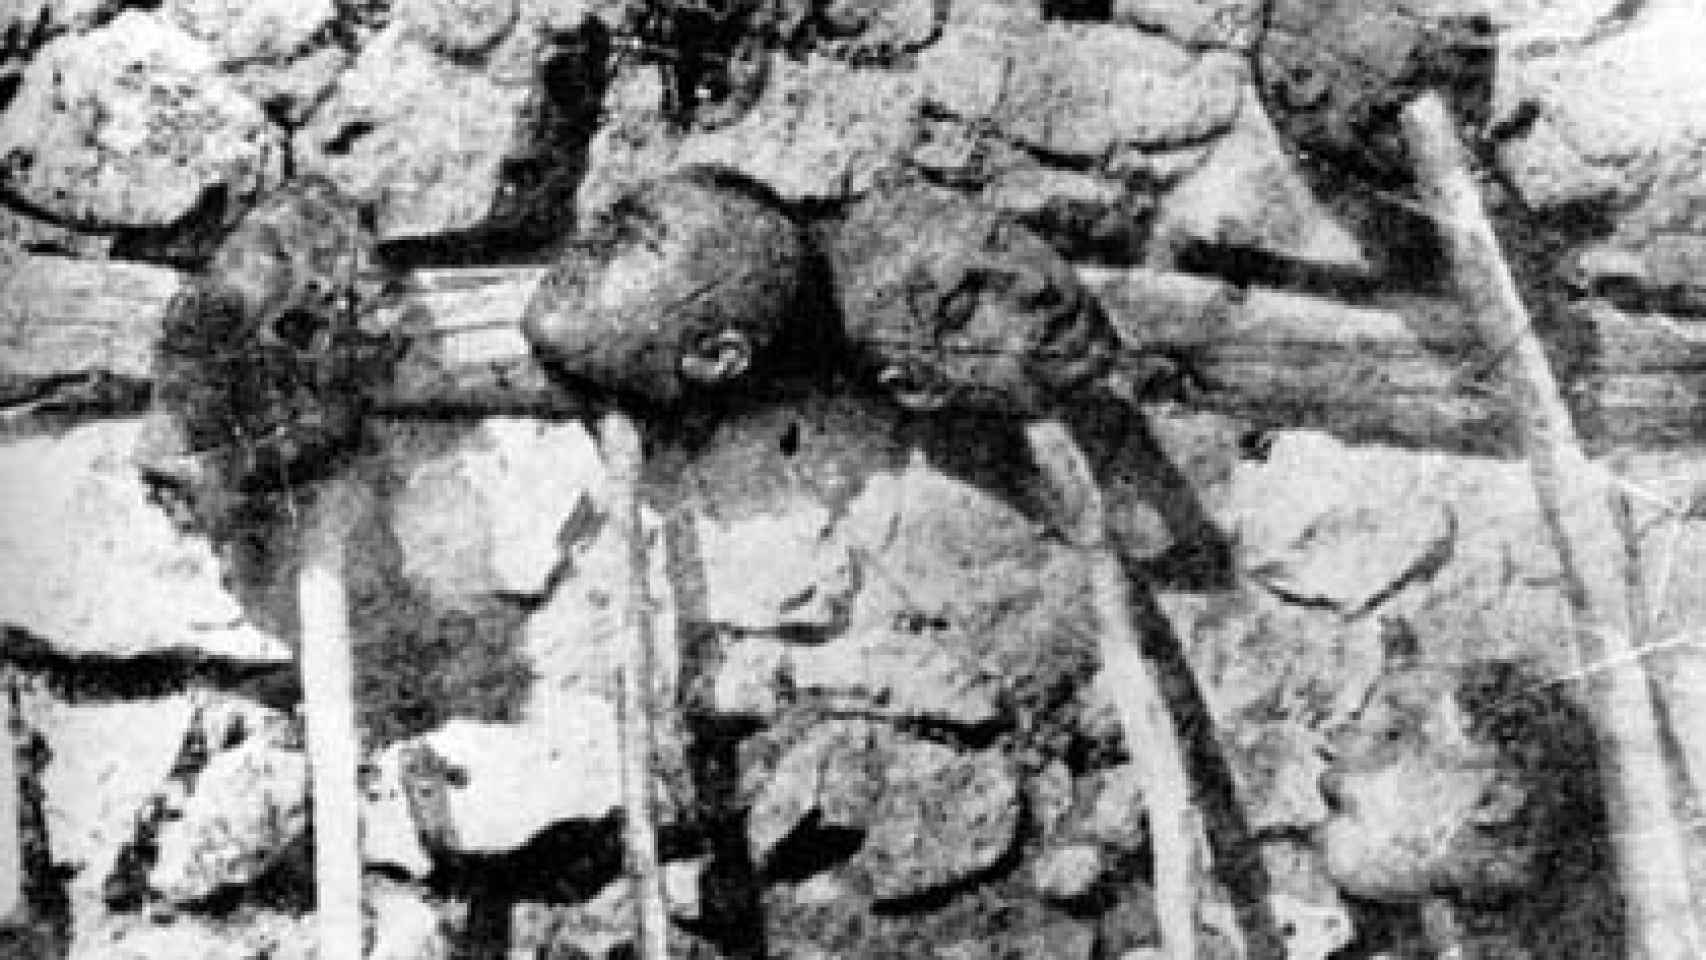 Cabezas de armenios decapitados expuestas.